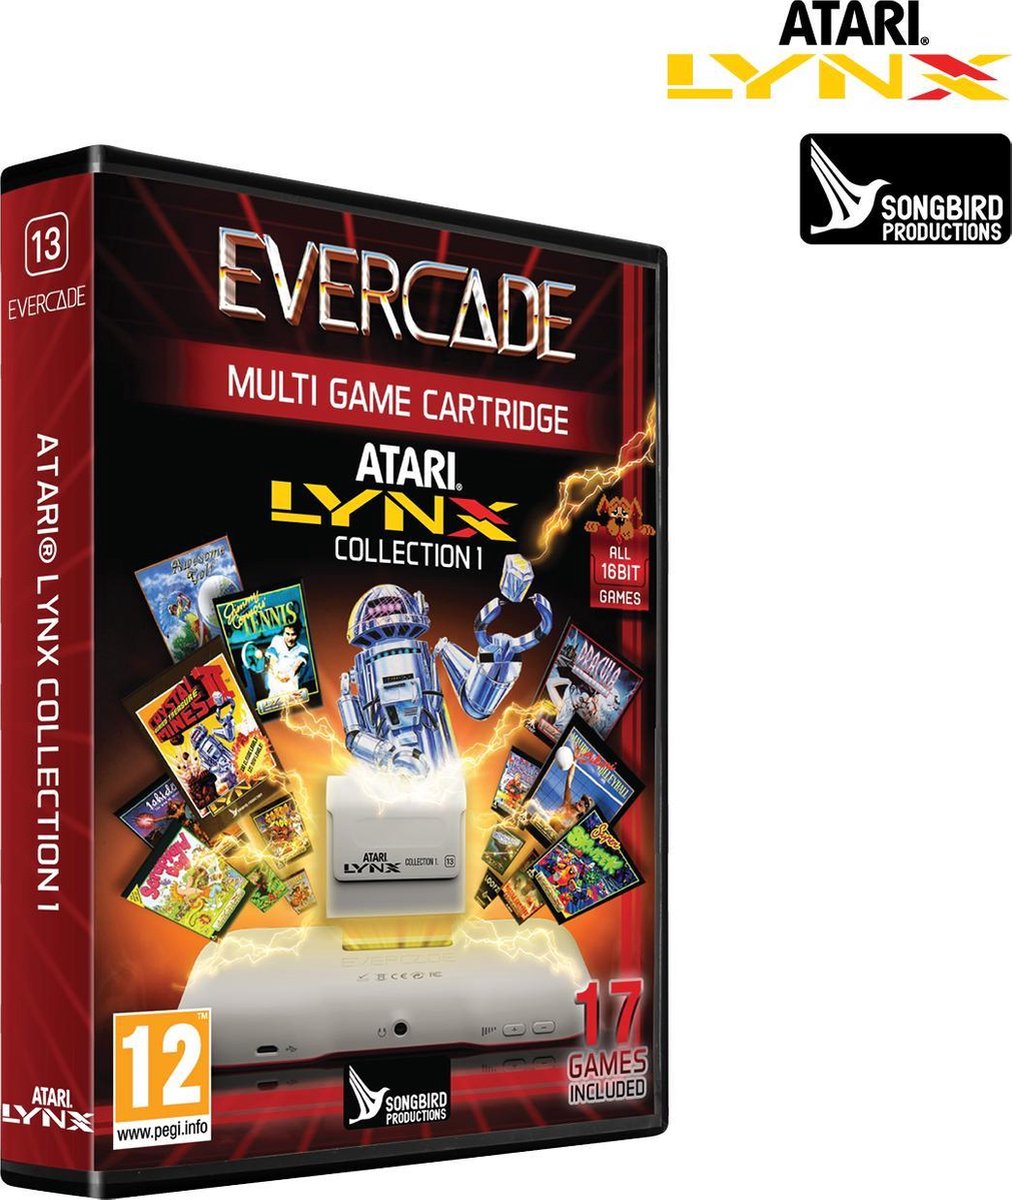 Evercade Atari Lynx Collection 1 (hardware), Evercade